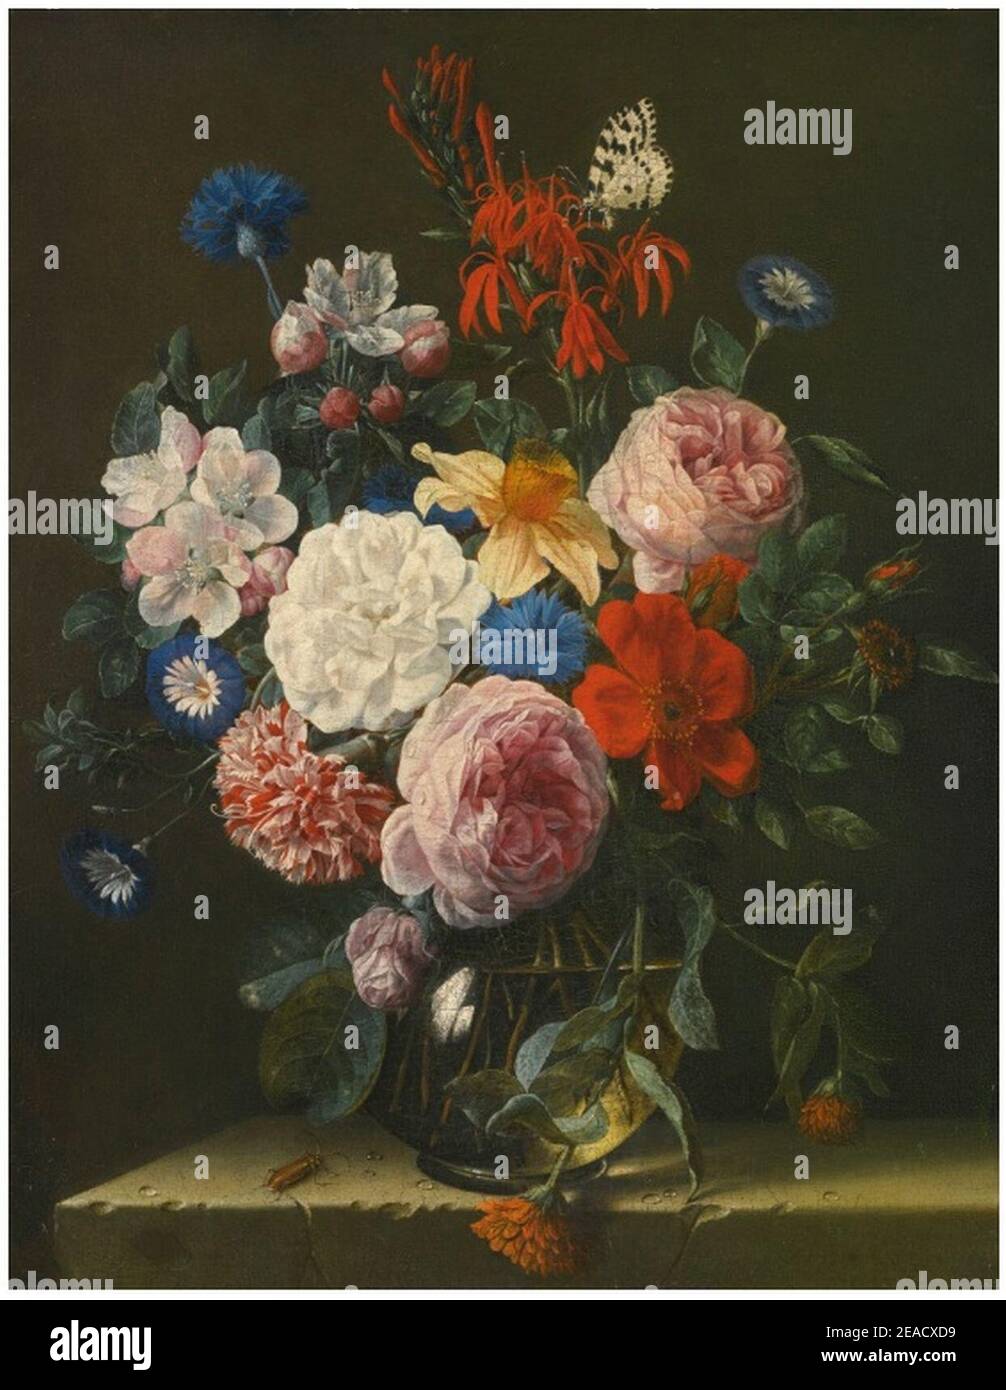 Nicolaes van Verendael - Stillleben aus rosa Rosen, Logelien, Apfelblüten,  Kornblumen, Narzissen, Nelken und blauem Convolvulus in einer Glasvase, mit  einem grauen Käfer und einer Elstermotte, alles auf einem Steinvorsprung  Stockfotografie - Alamy